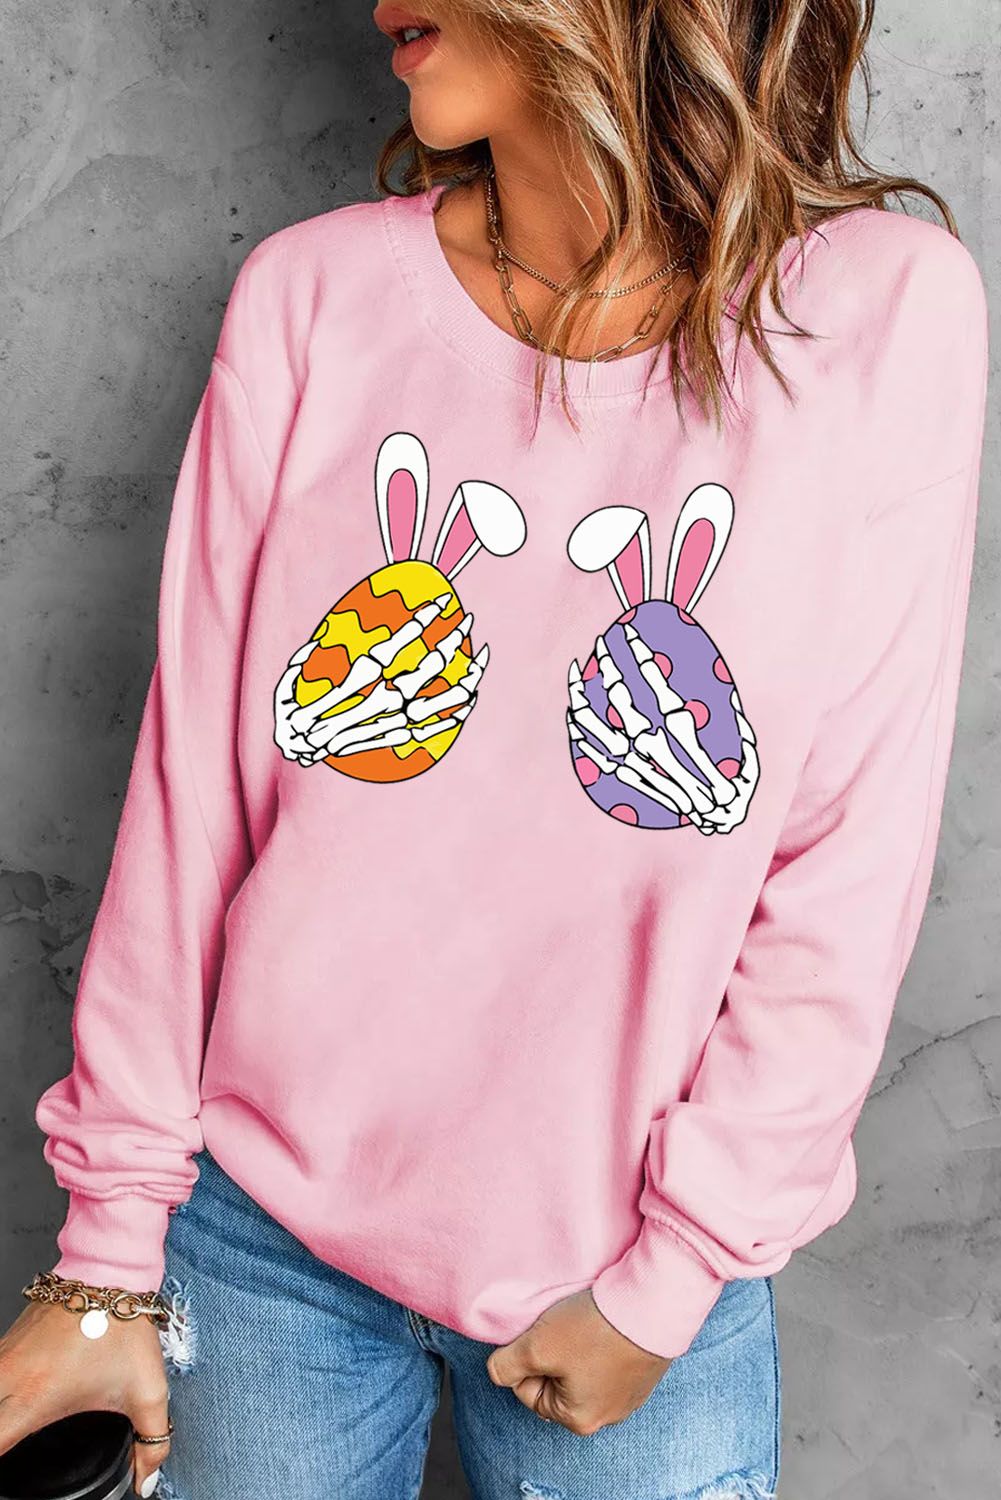 LC25314502-10-S, LC25314502-10-M, LC25314502-10-L, LC25314502-10-XL, LC25314502-10-2XL, Pink Skull Easter Print Sweatshirt Crew Neck Pullover Tops for Women